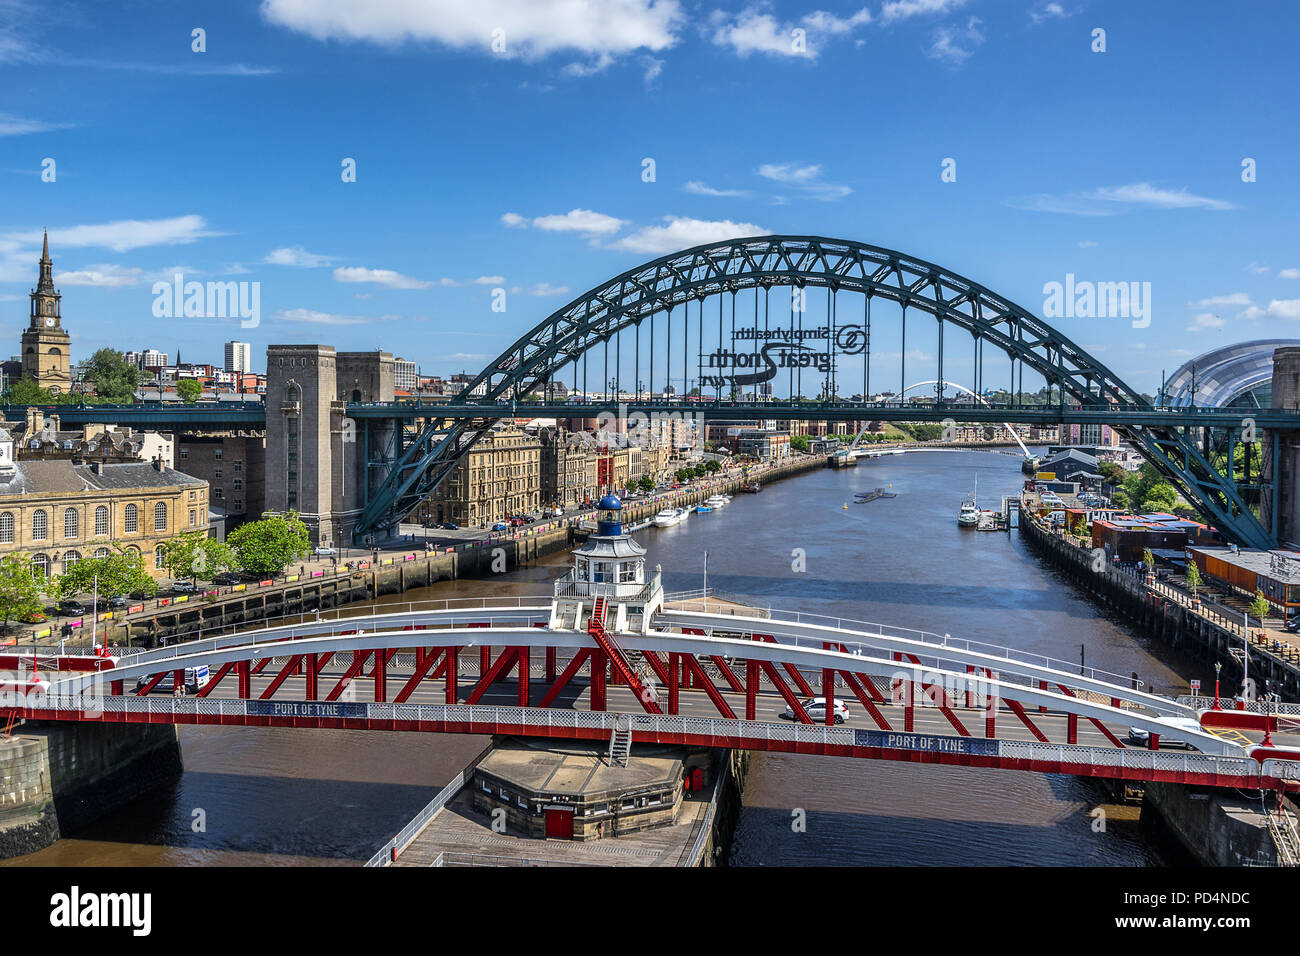 El Columpio puente que cruza el río Tyne entre Newcastle y Gateshead Foto de stock